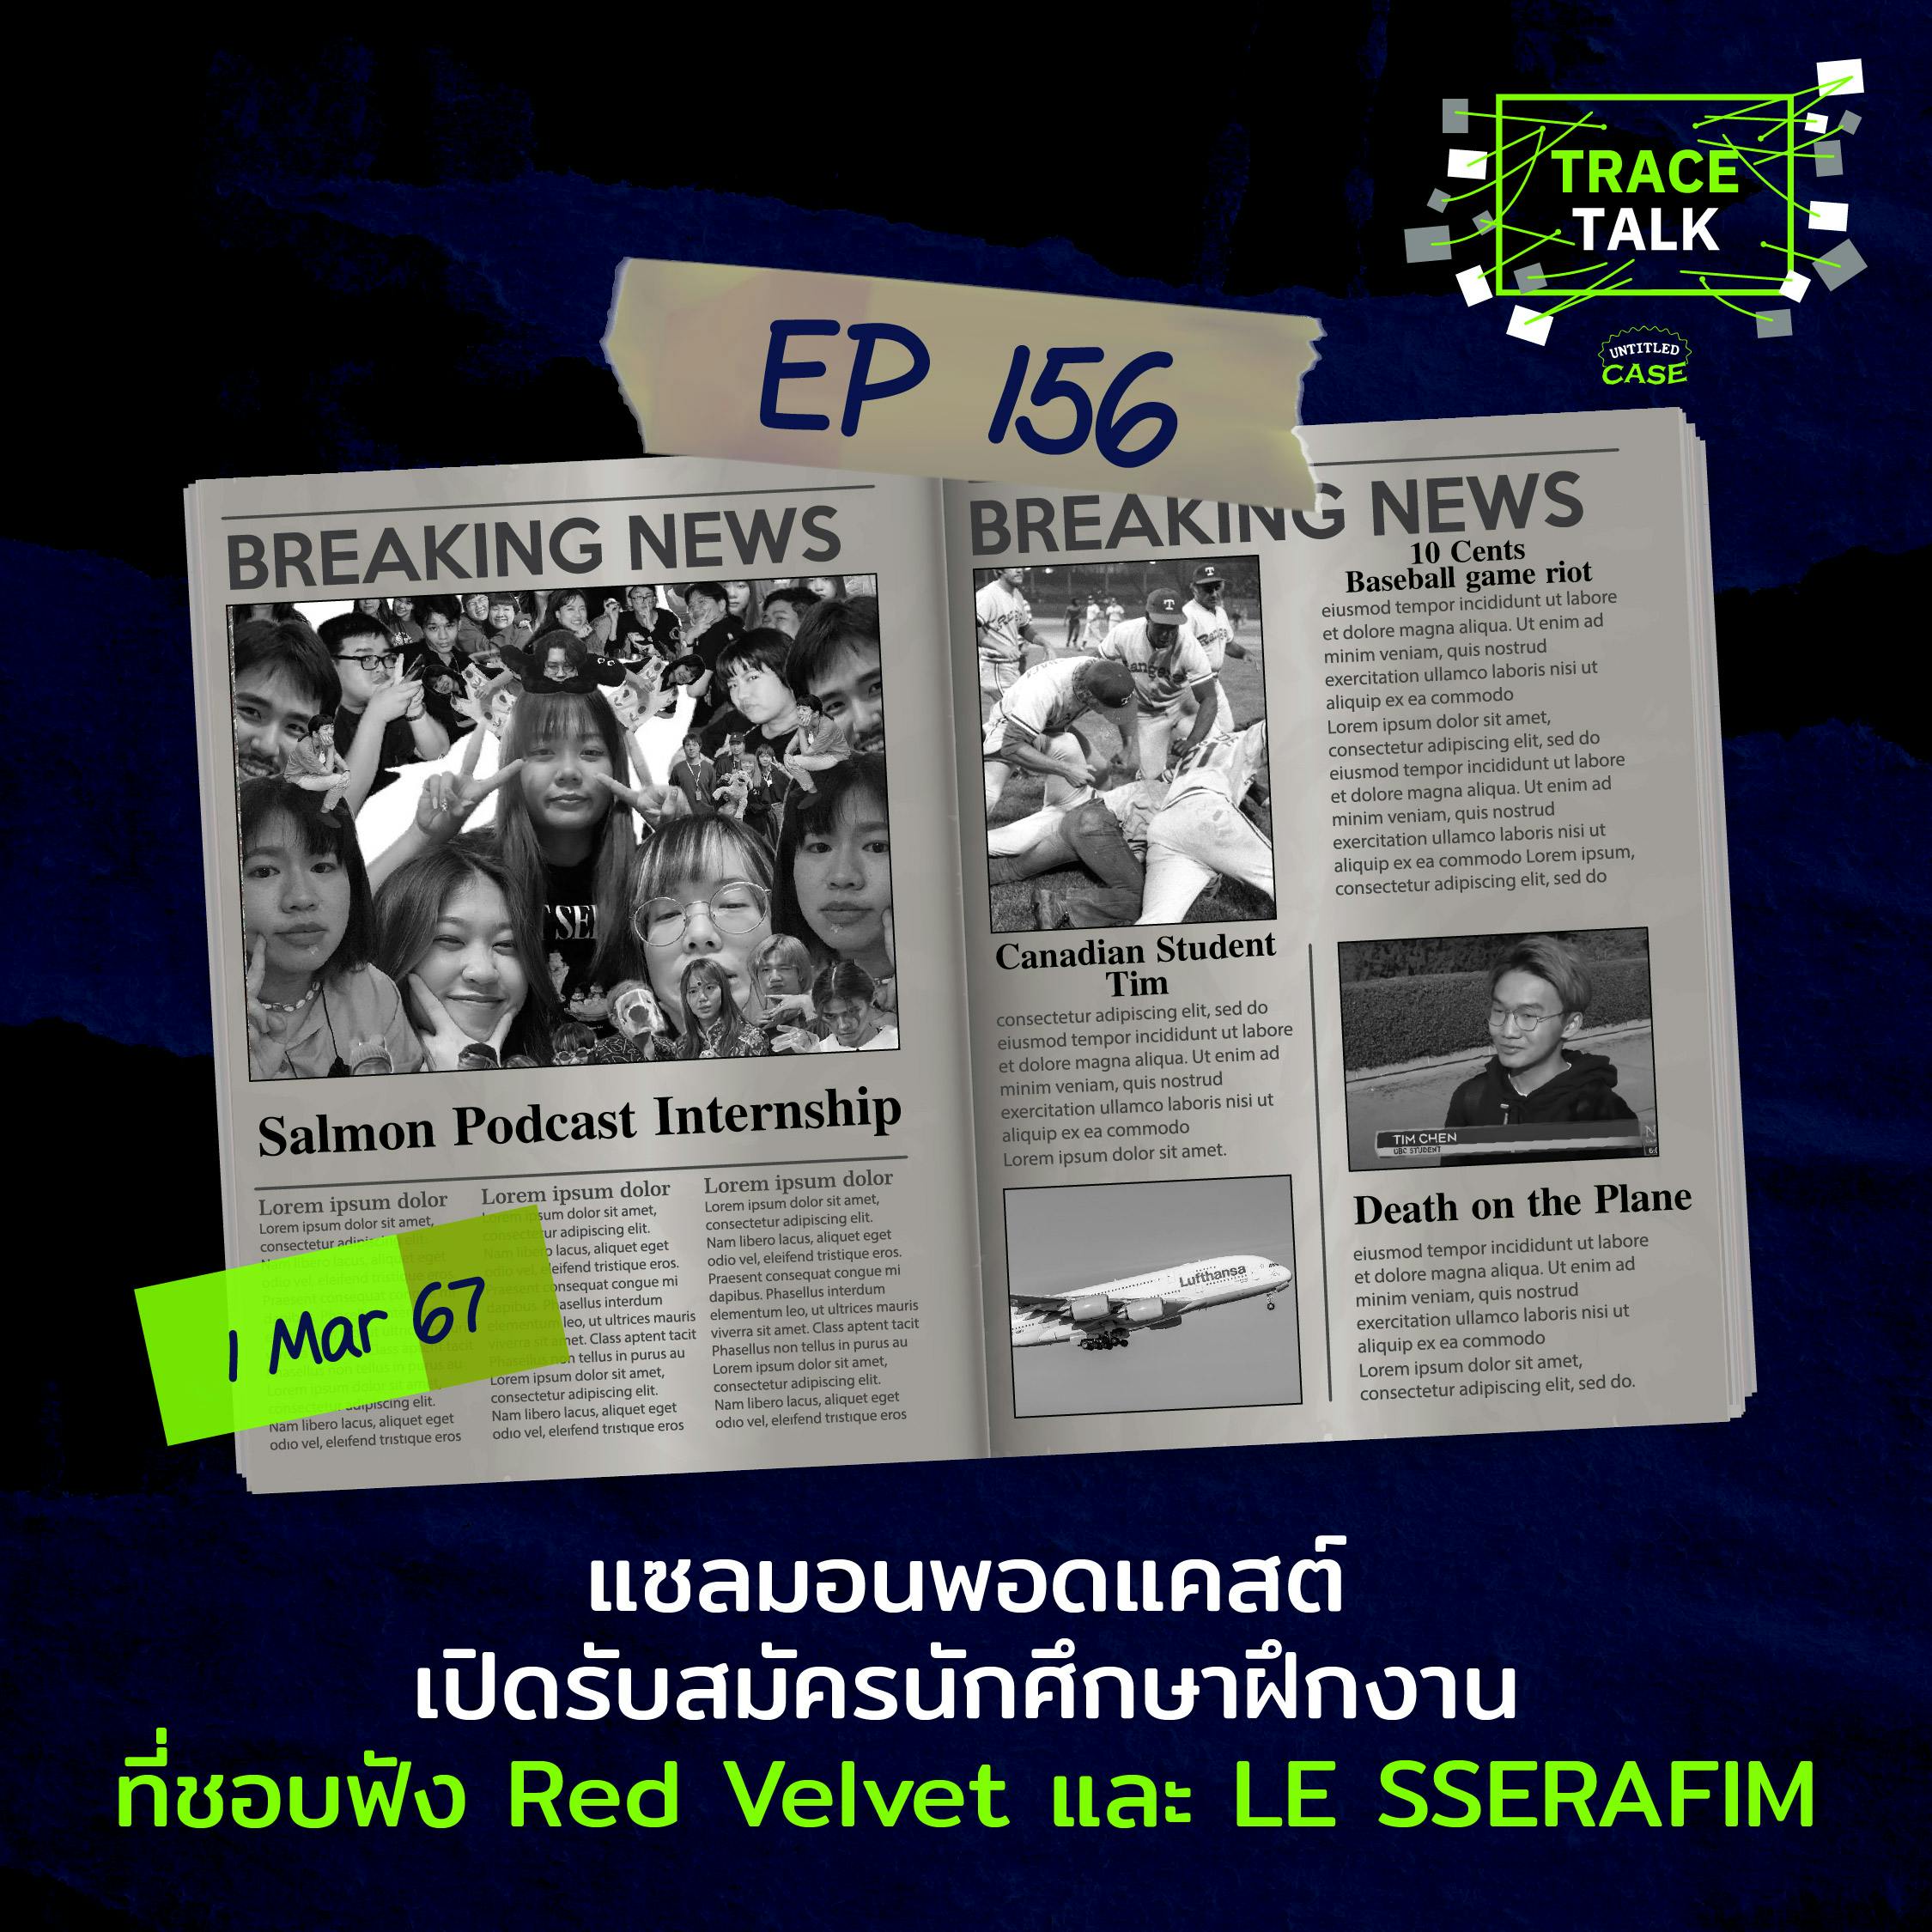 แซลมอนพอดแคสต์ เปิดรับสมัครนักศึกษาฝึกงานที่ชอบฟัง Red Velvet และ LE SSERAFIM | Trace Talk EP156